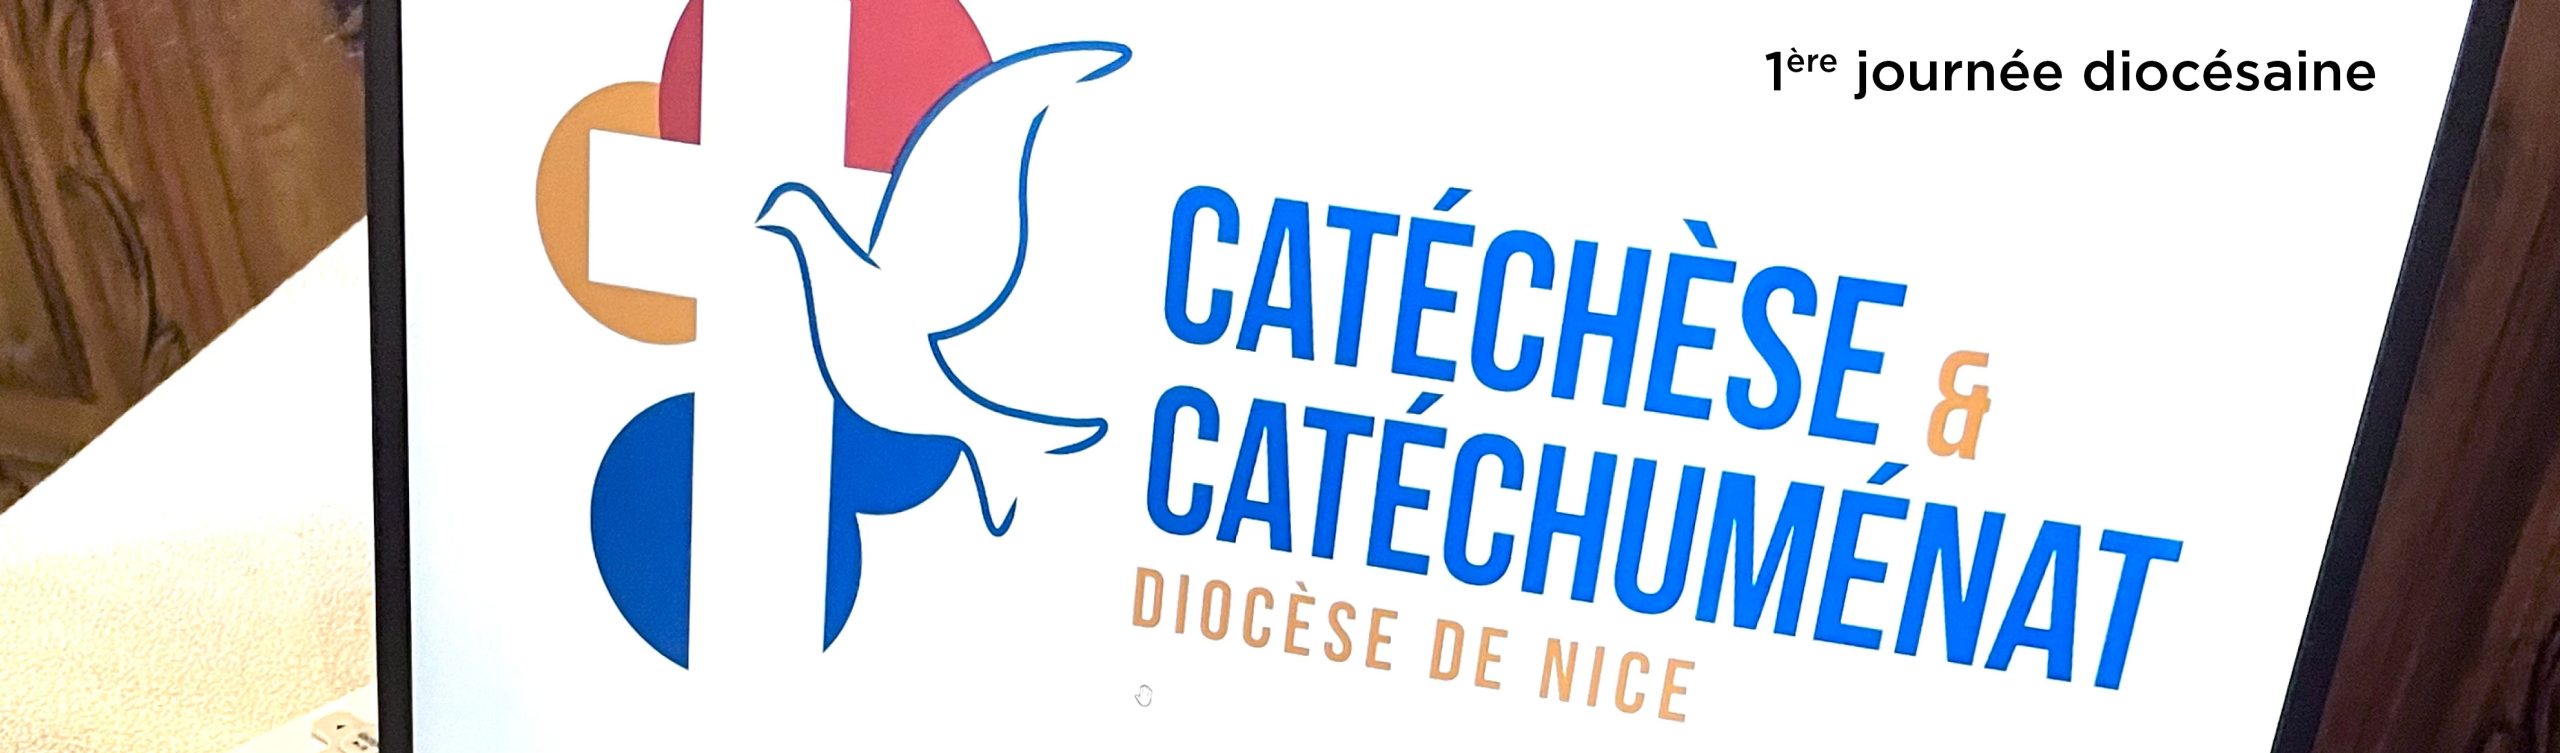 Journée diocésaine catéchèse catéchuménat